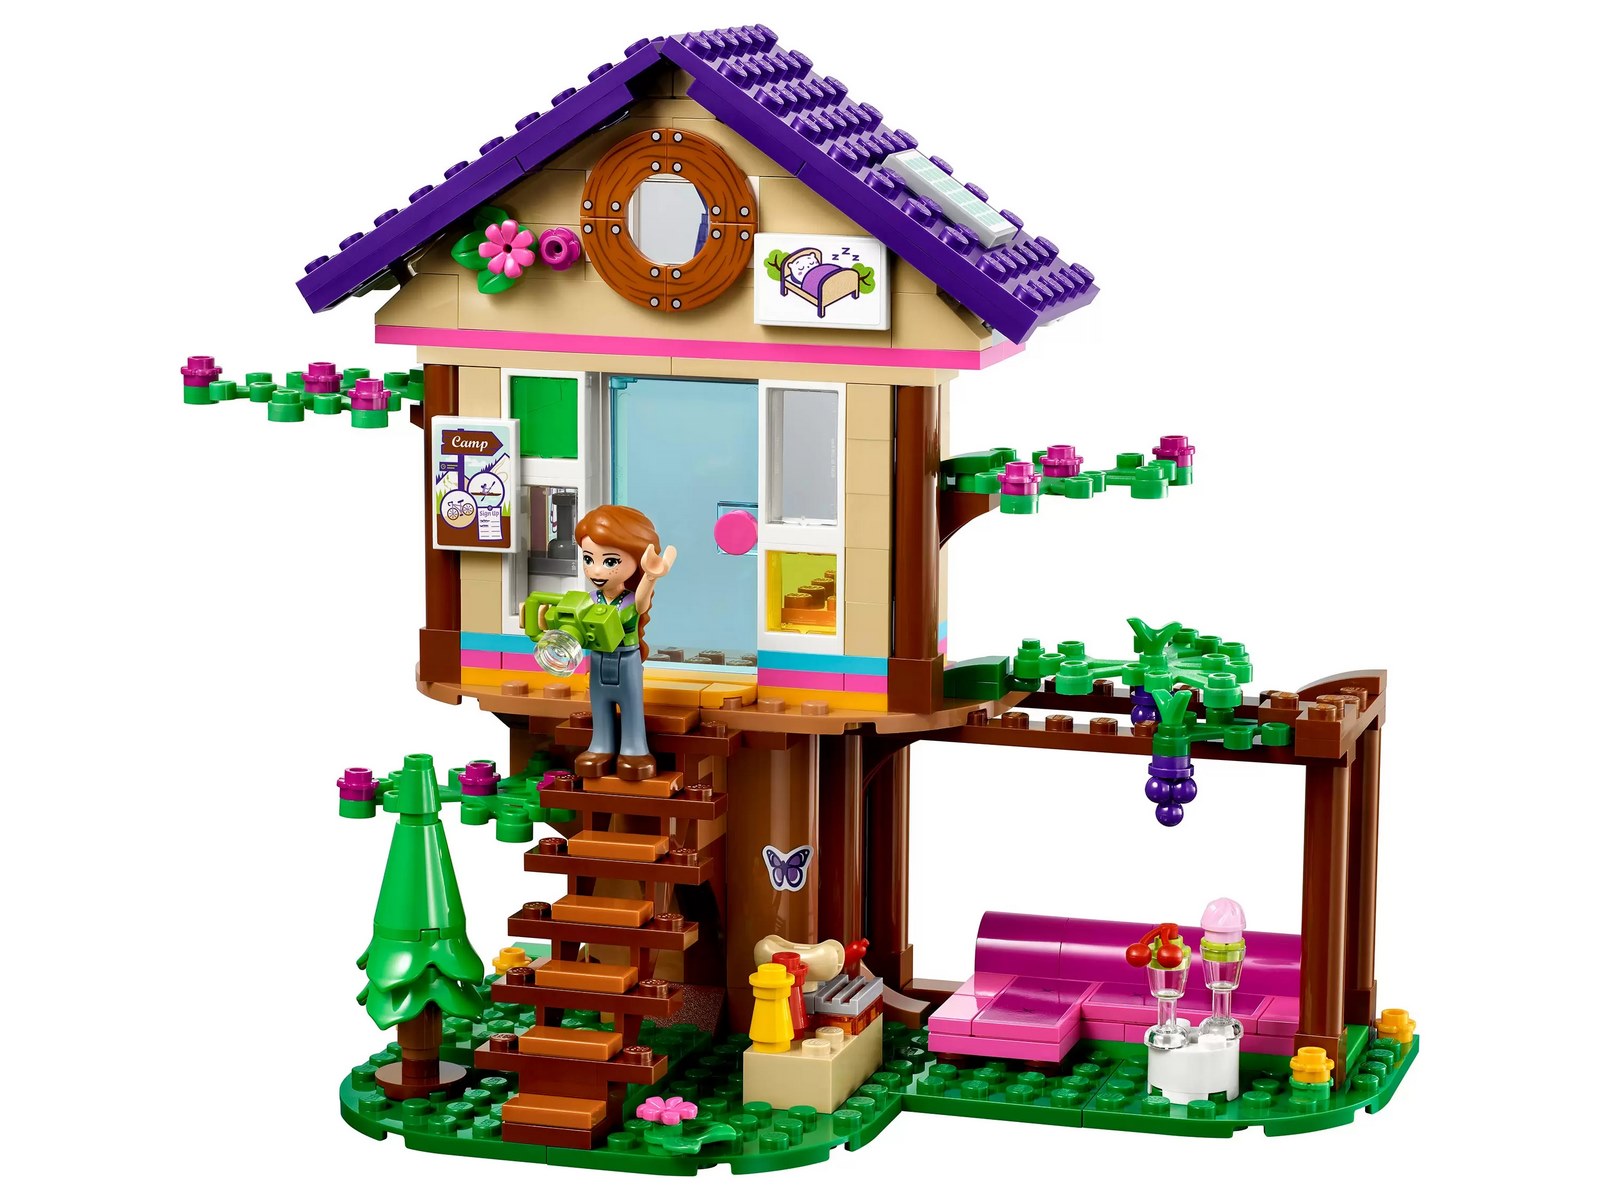 Конструктор LEGO Friends «Домик в лесу» 41679 / 326 деталей